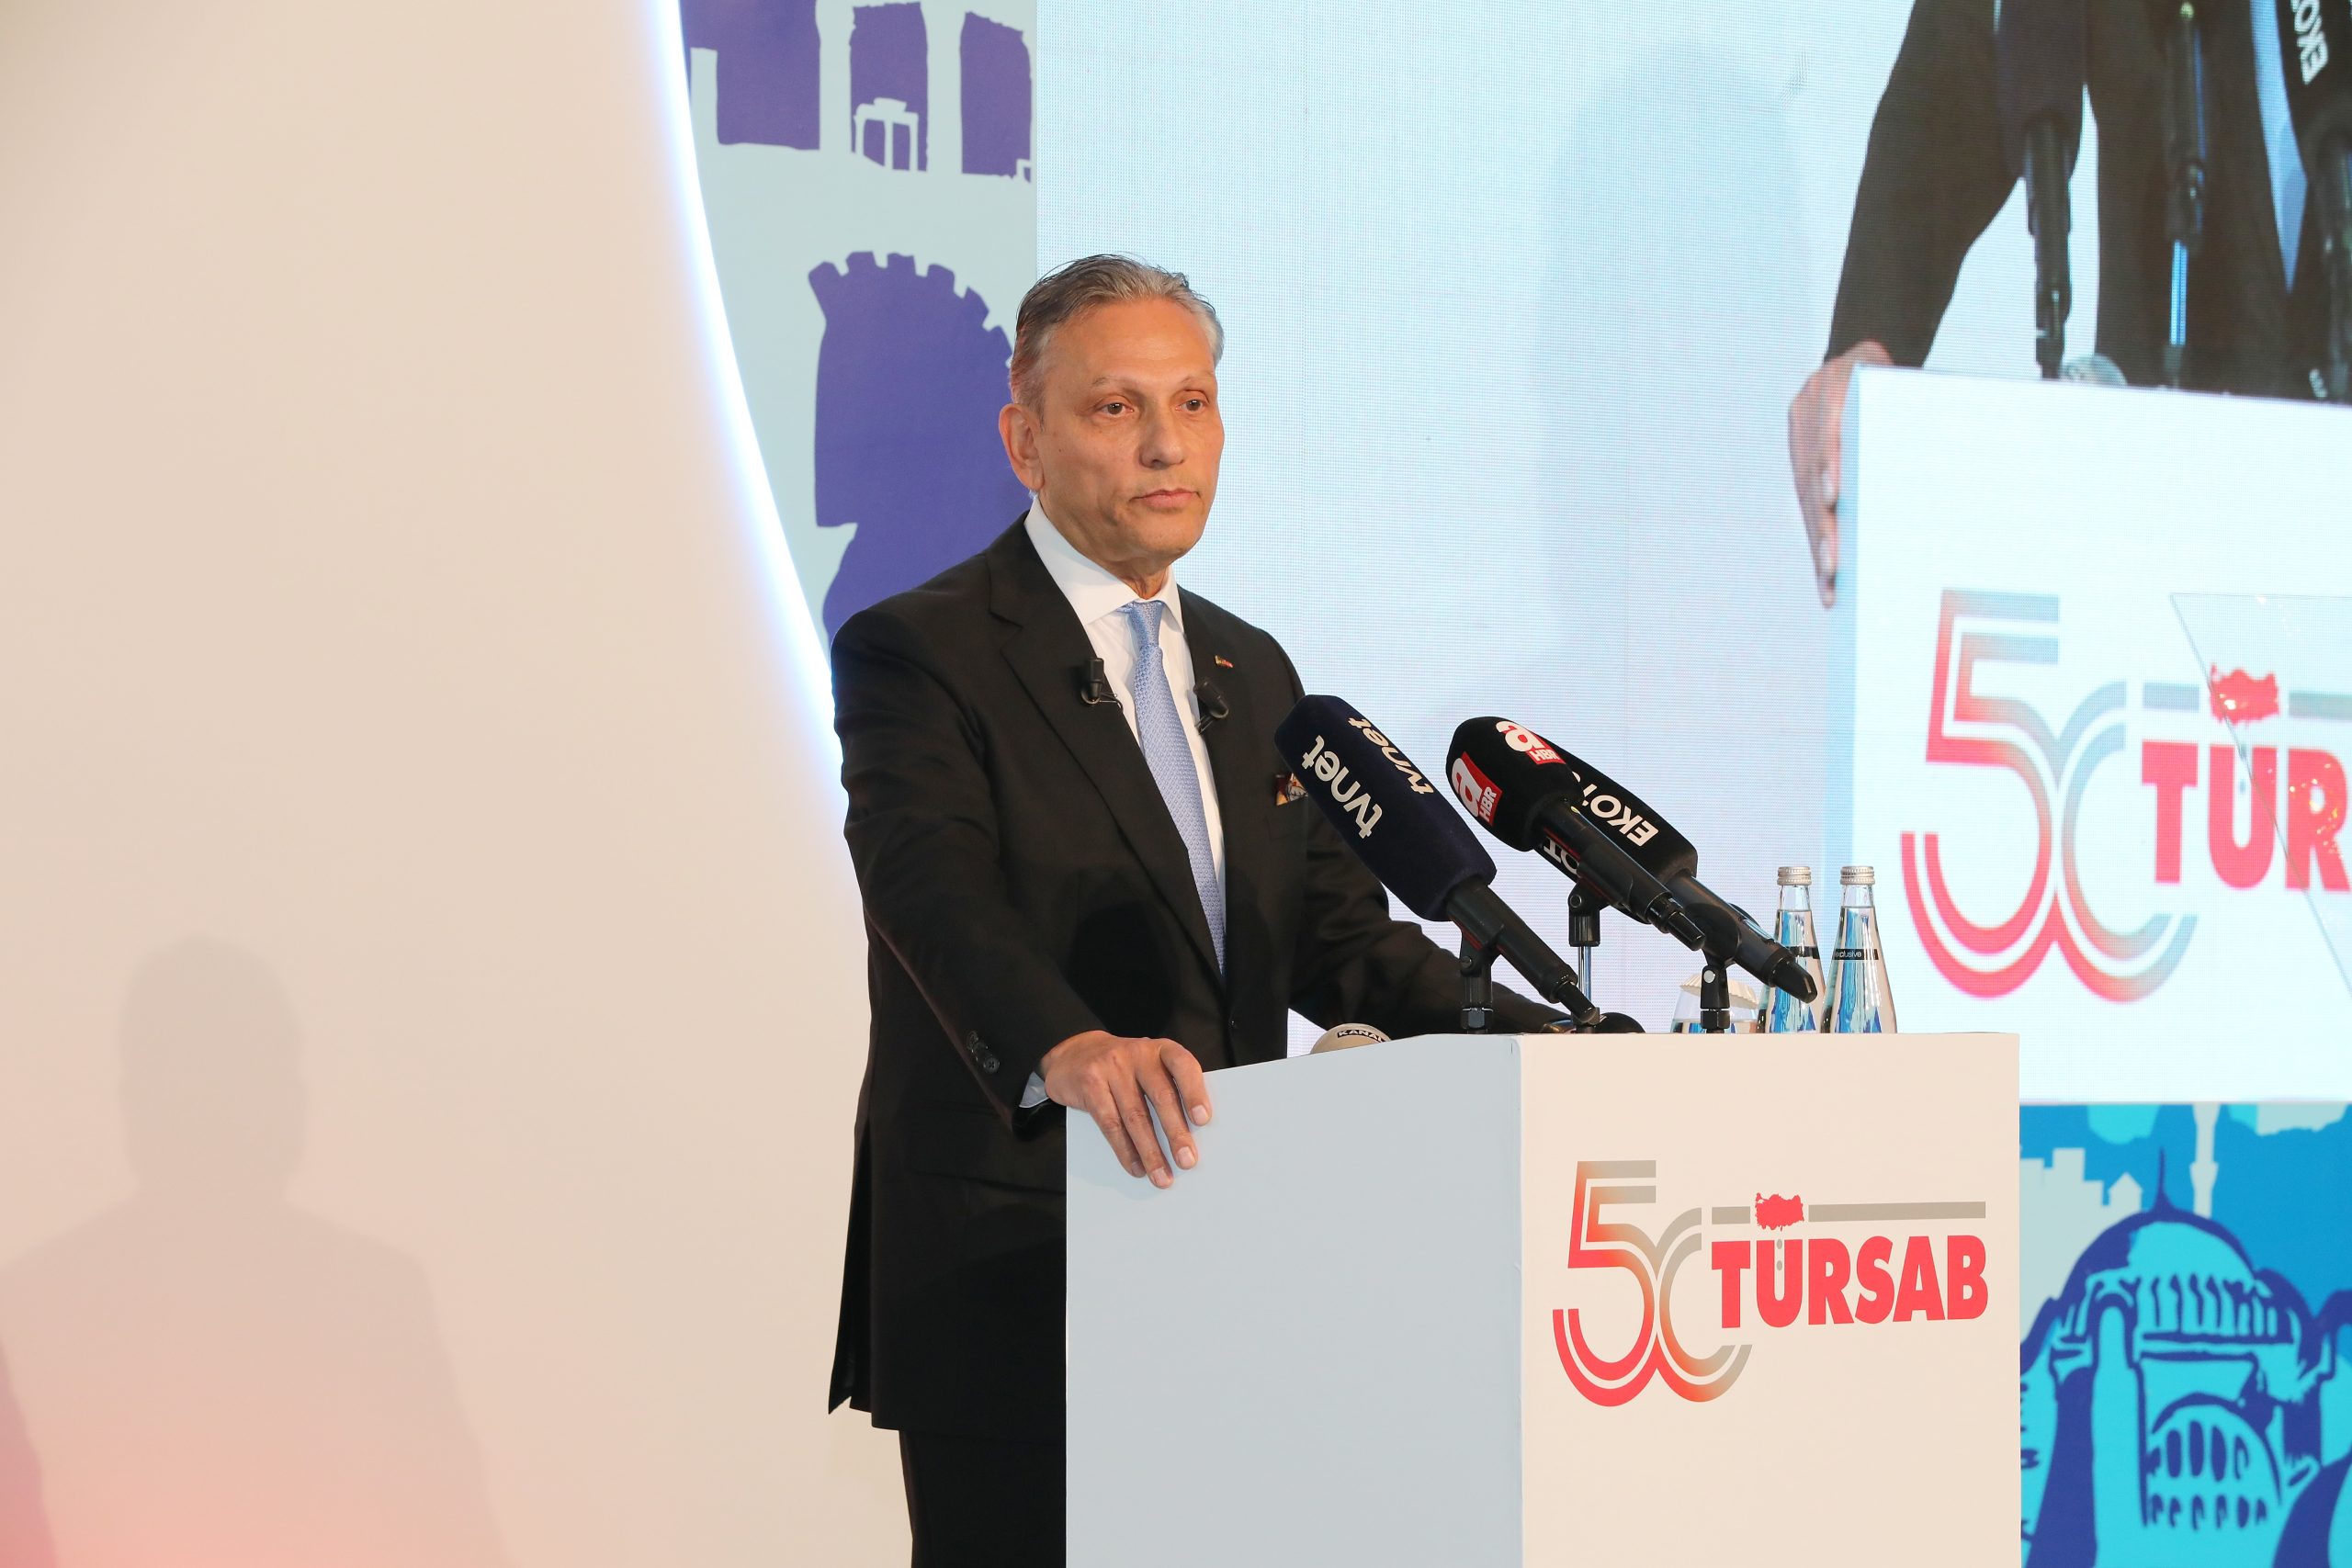 TÜRSAB “Turizm Yüzyılı” projesi tanıtım toplantısı gerçekleştirdi